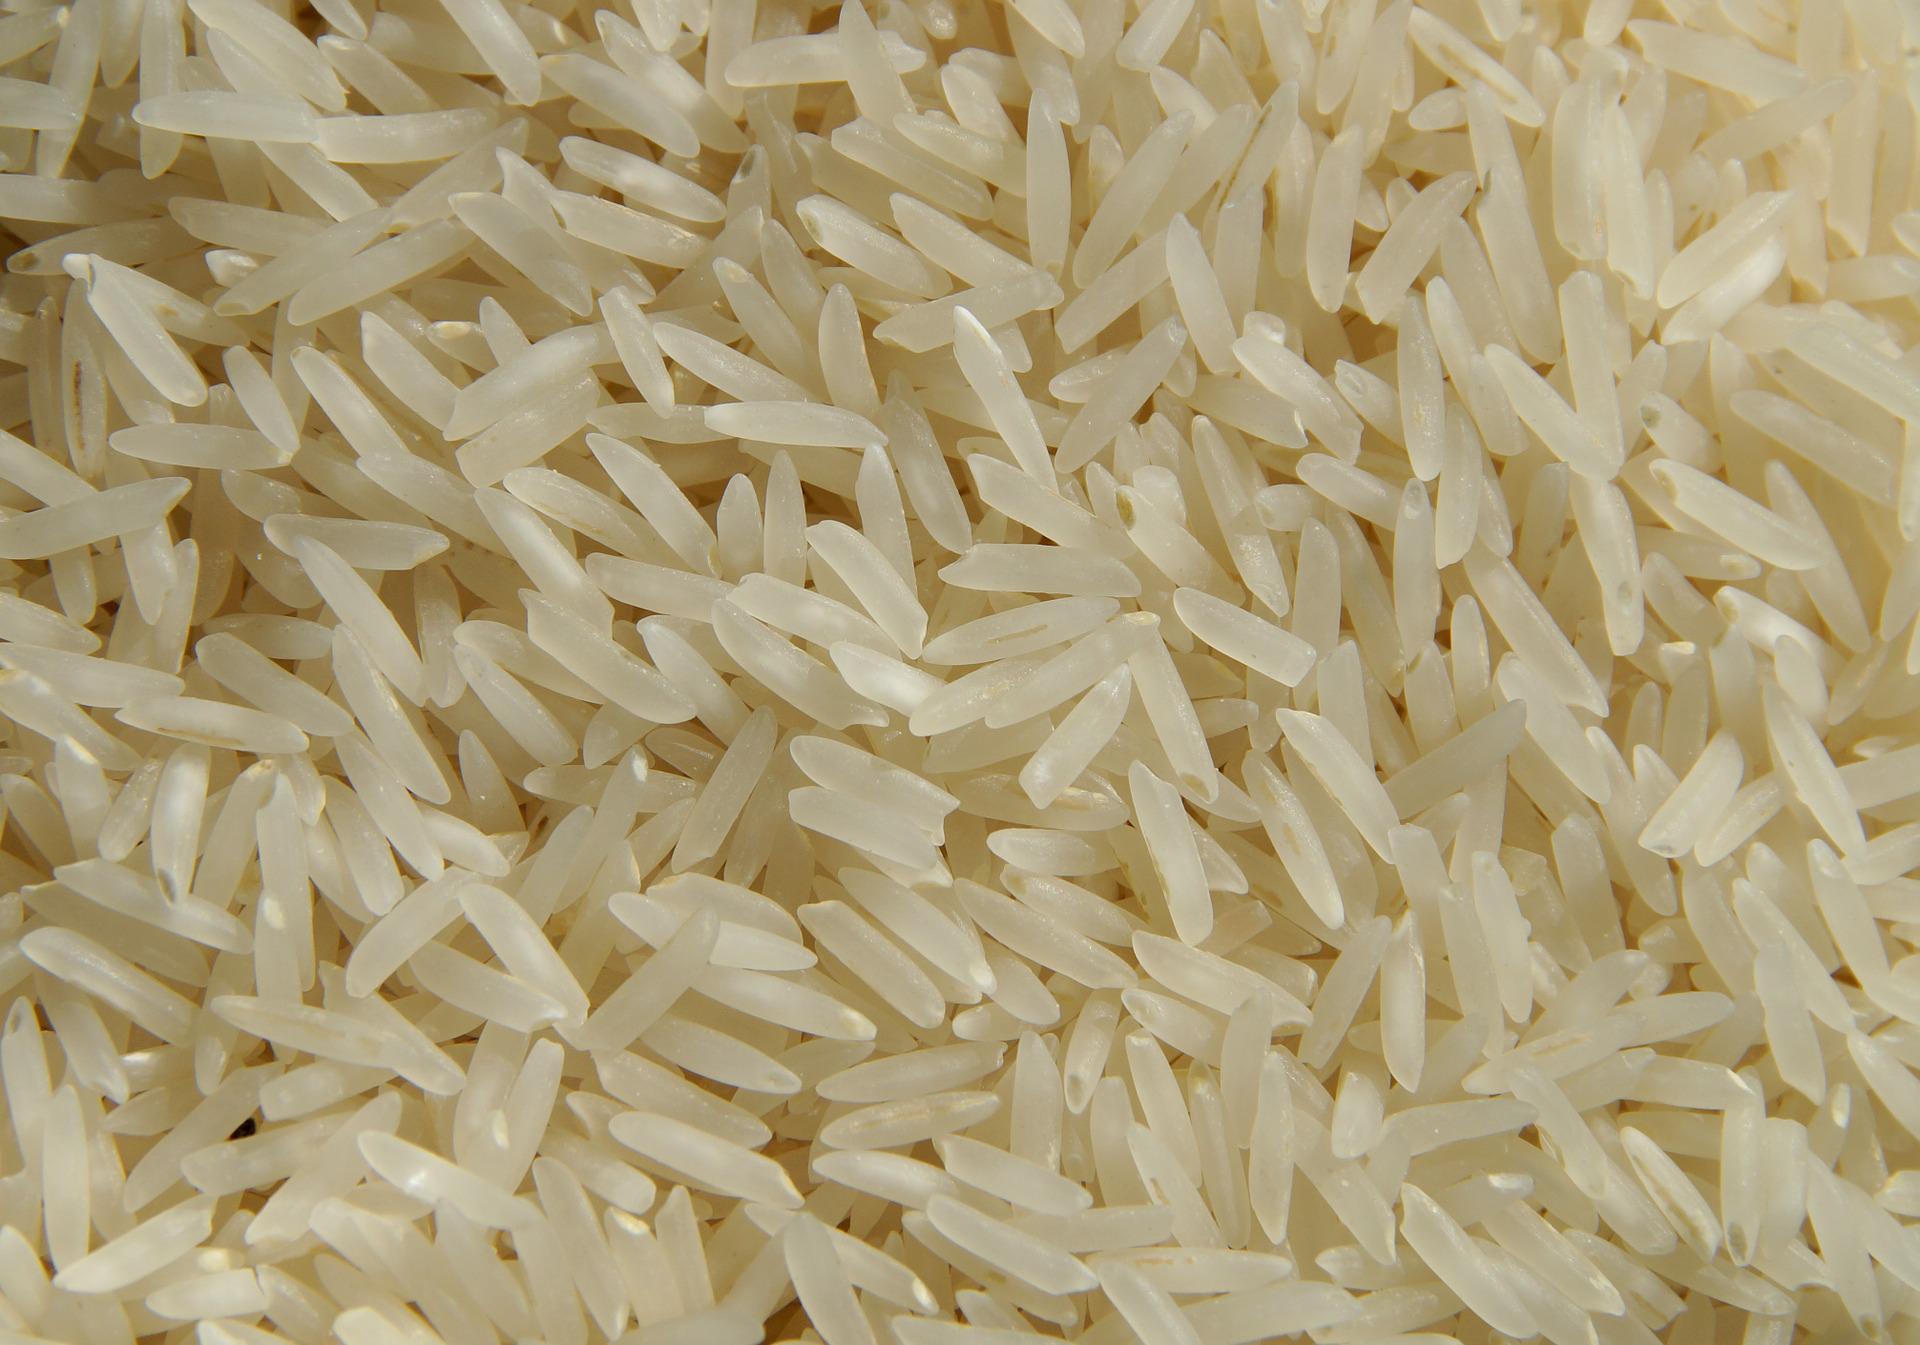 Governo autoriza importação de arroz devido aos prejuízos causados pelas enchentes no RS